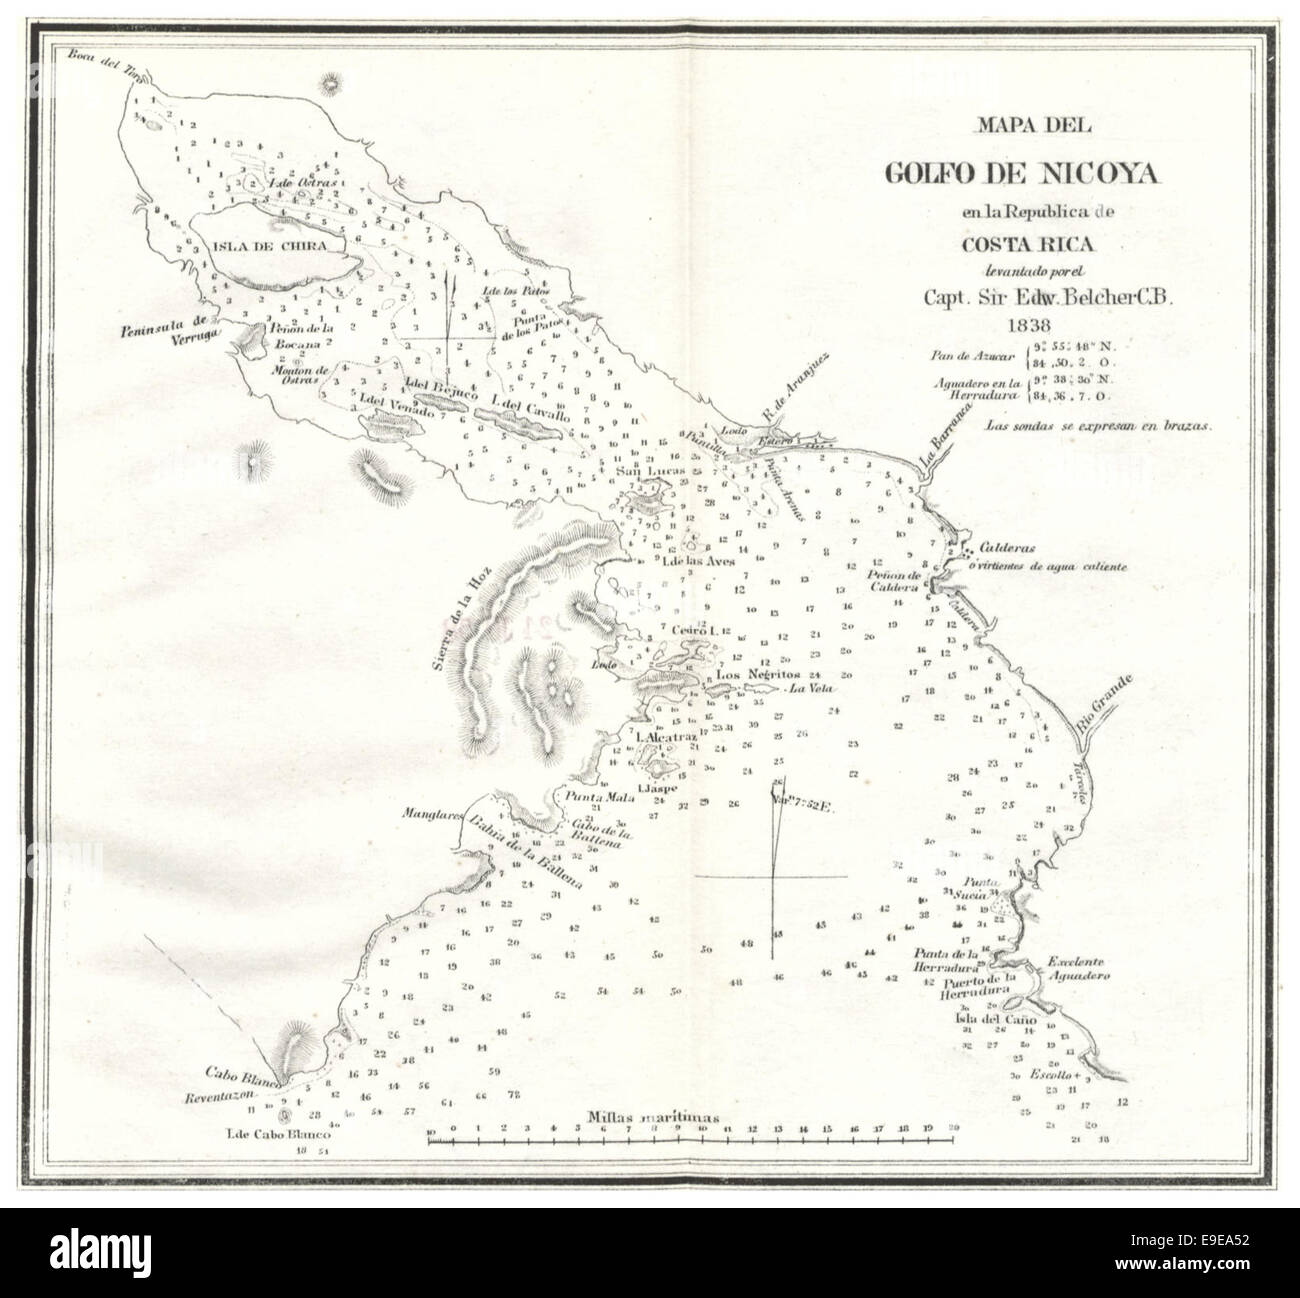 Mapadel Golfo de Nicoya en la Republica de Costa Rica (1838) Stock Photo